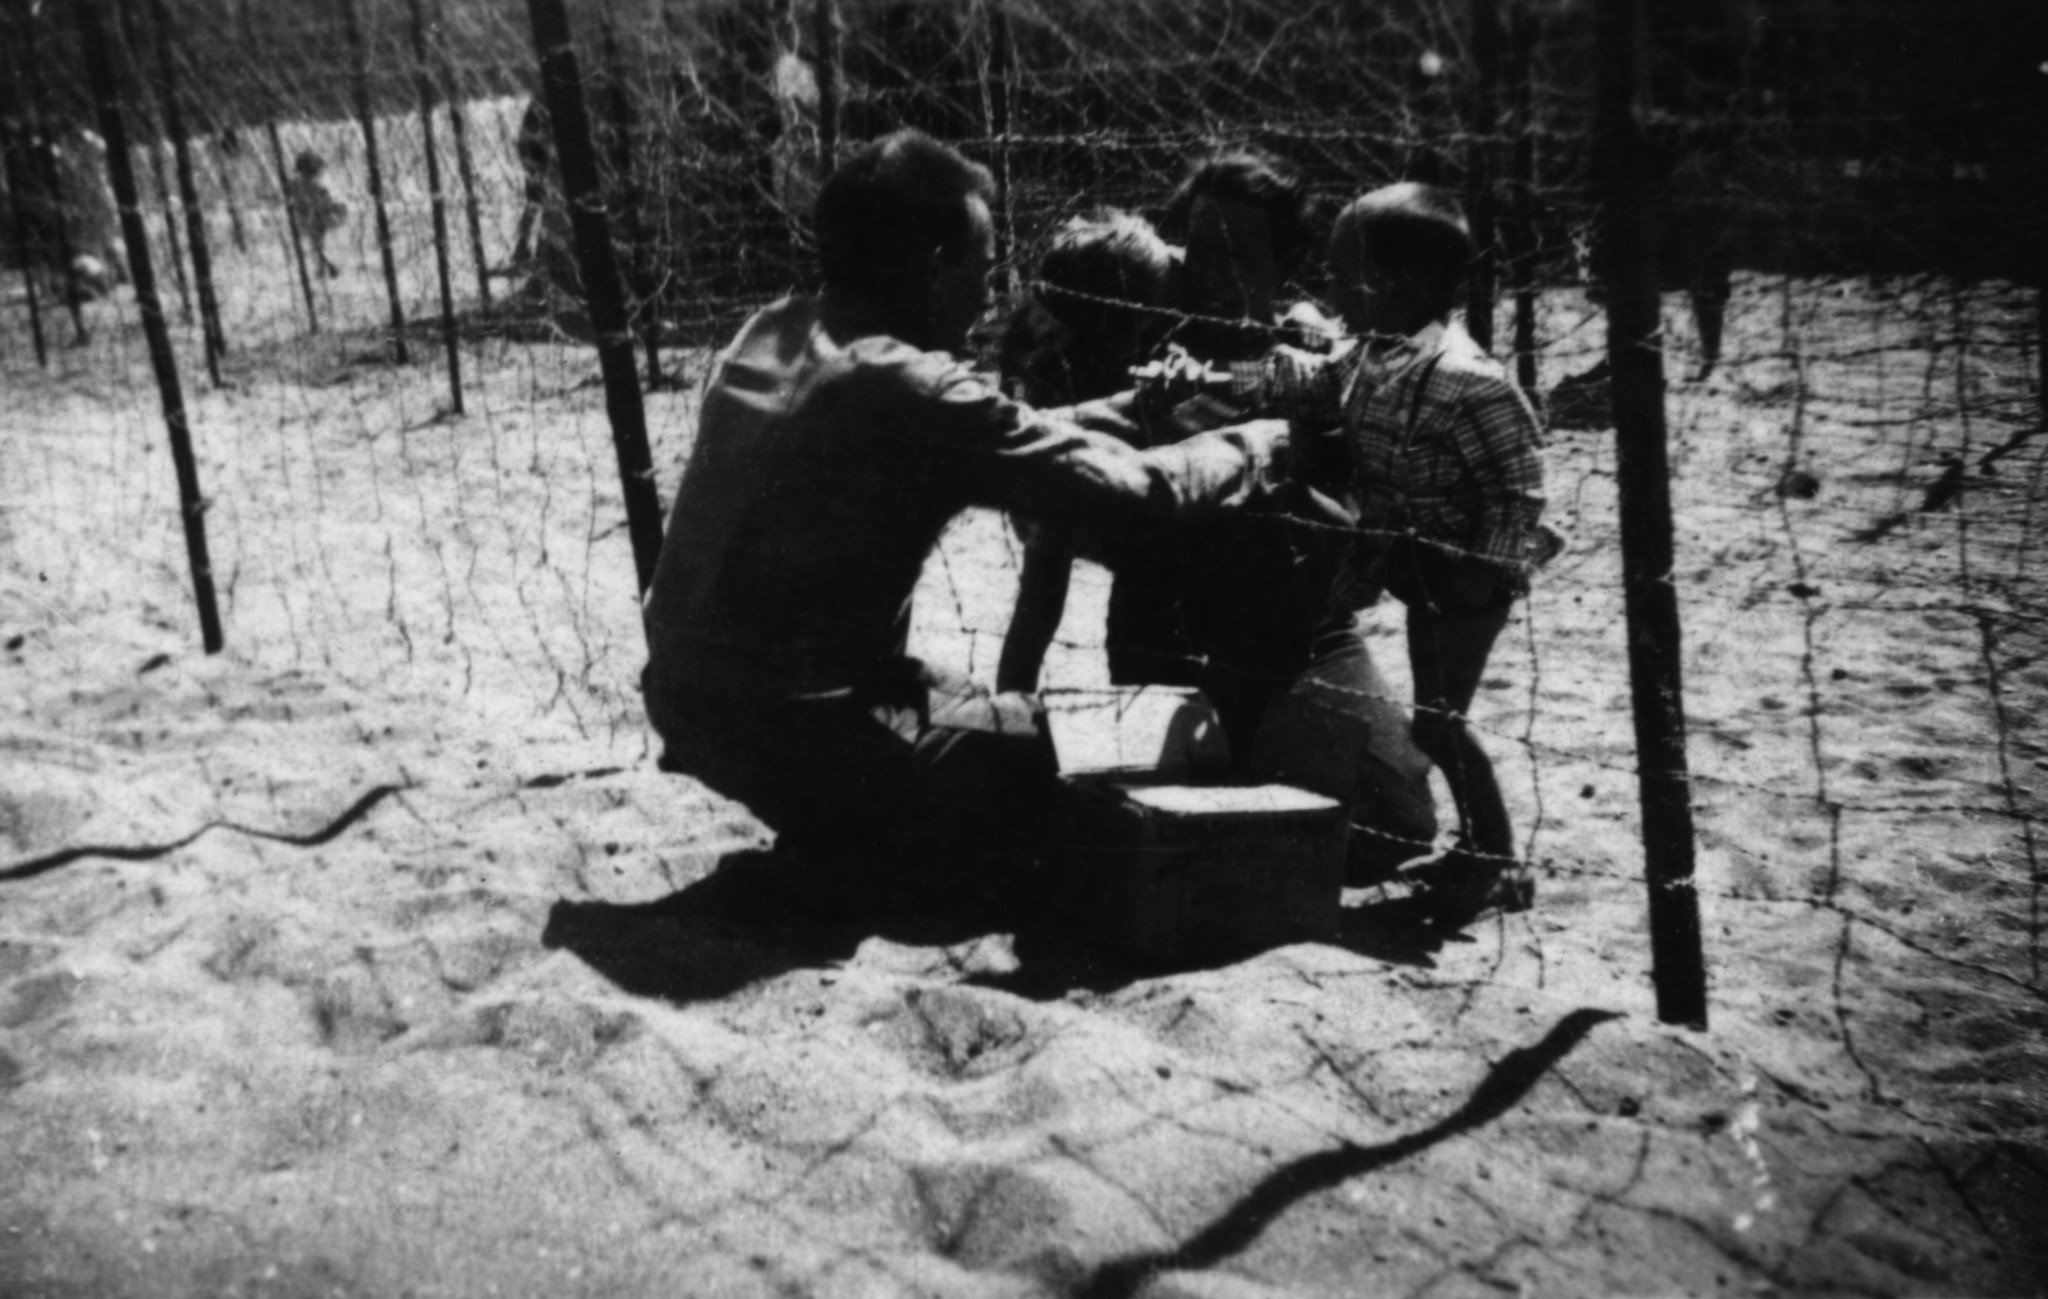  Séparation entre le camp des hommes et le camp des femmes, camp d’Argelès-sur-Mer, 1940.